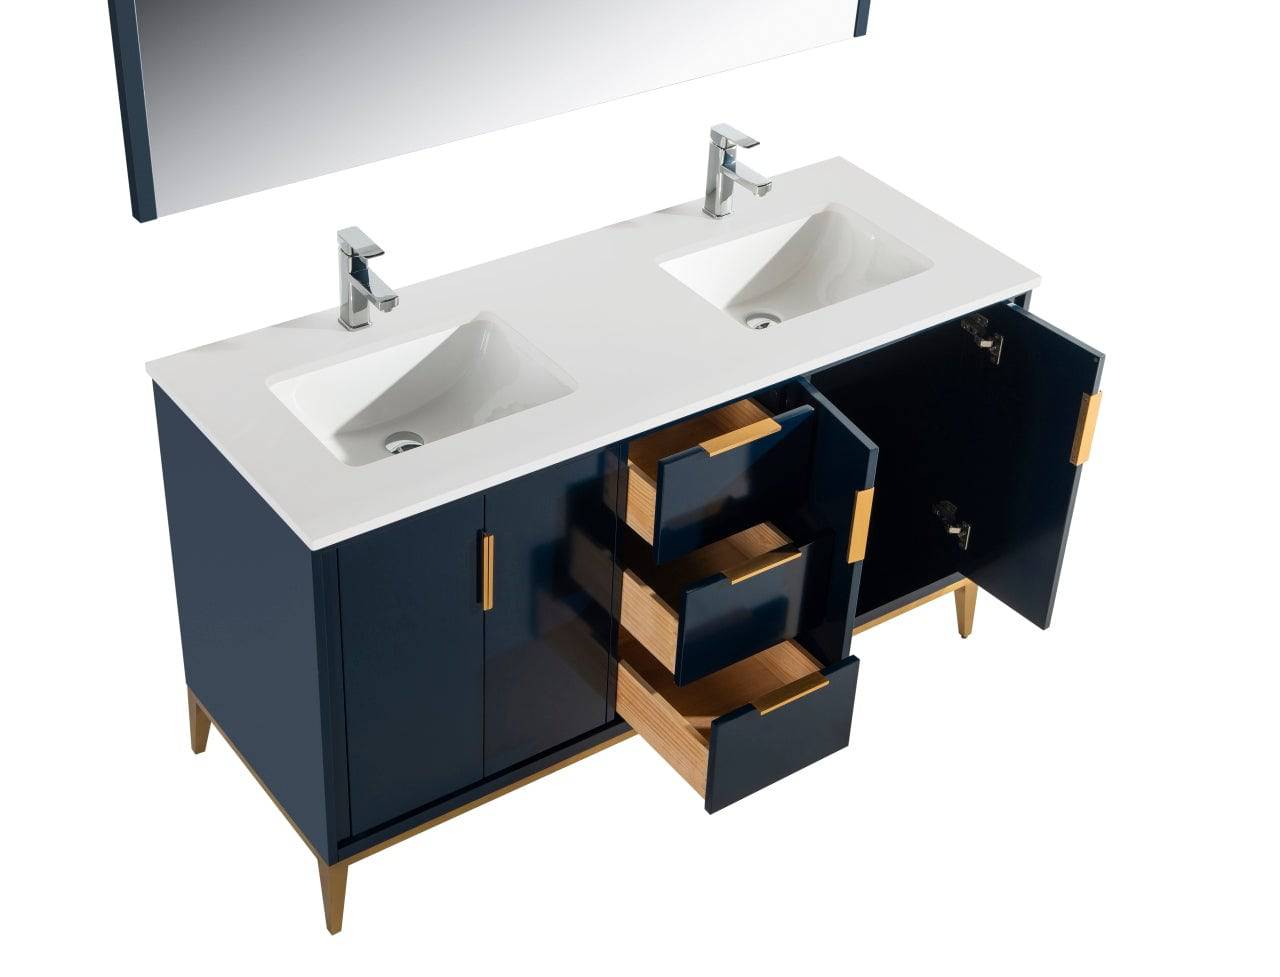 Kube Bath Divani 60" Floor Mount Double Sink Bathroom Vanity With Quartz Countertop , Backsplash and 4 Doors And 3 Drawers KD9960 - Renoz